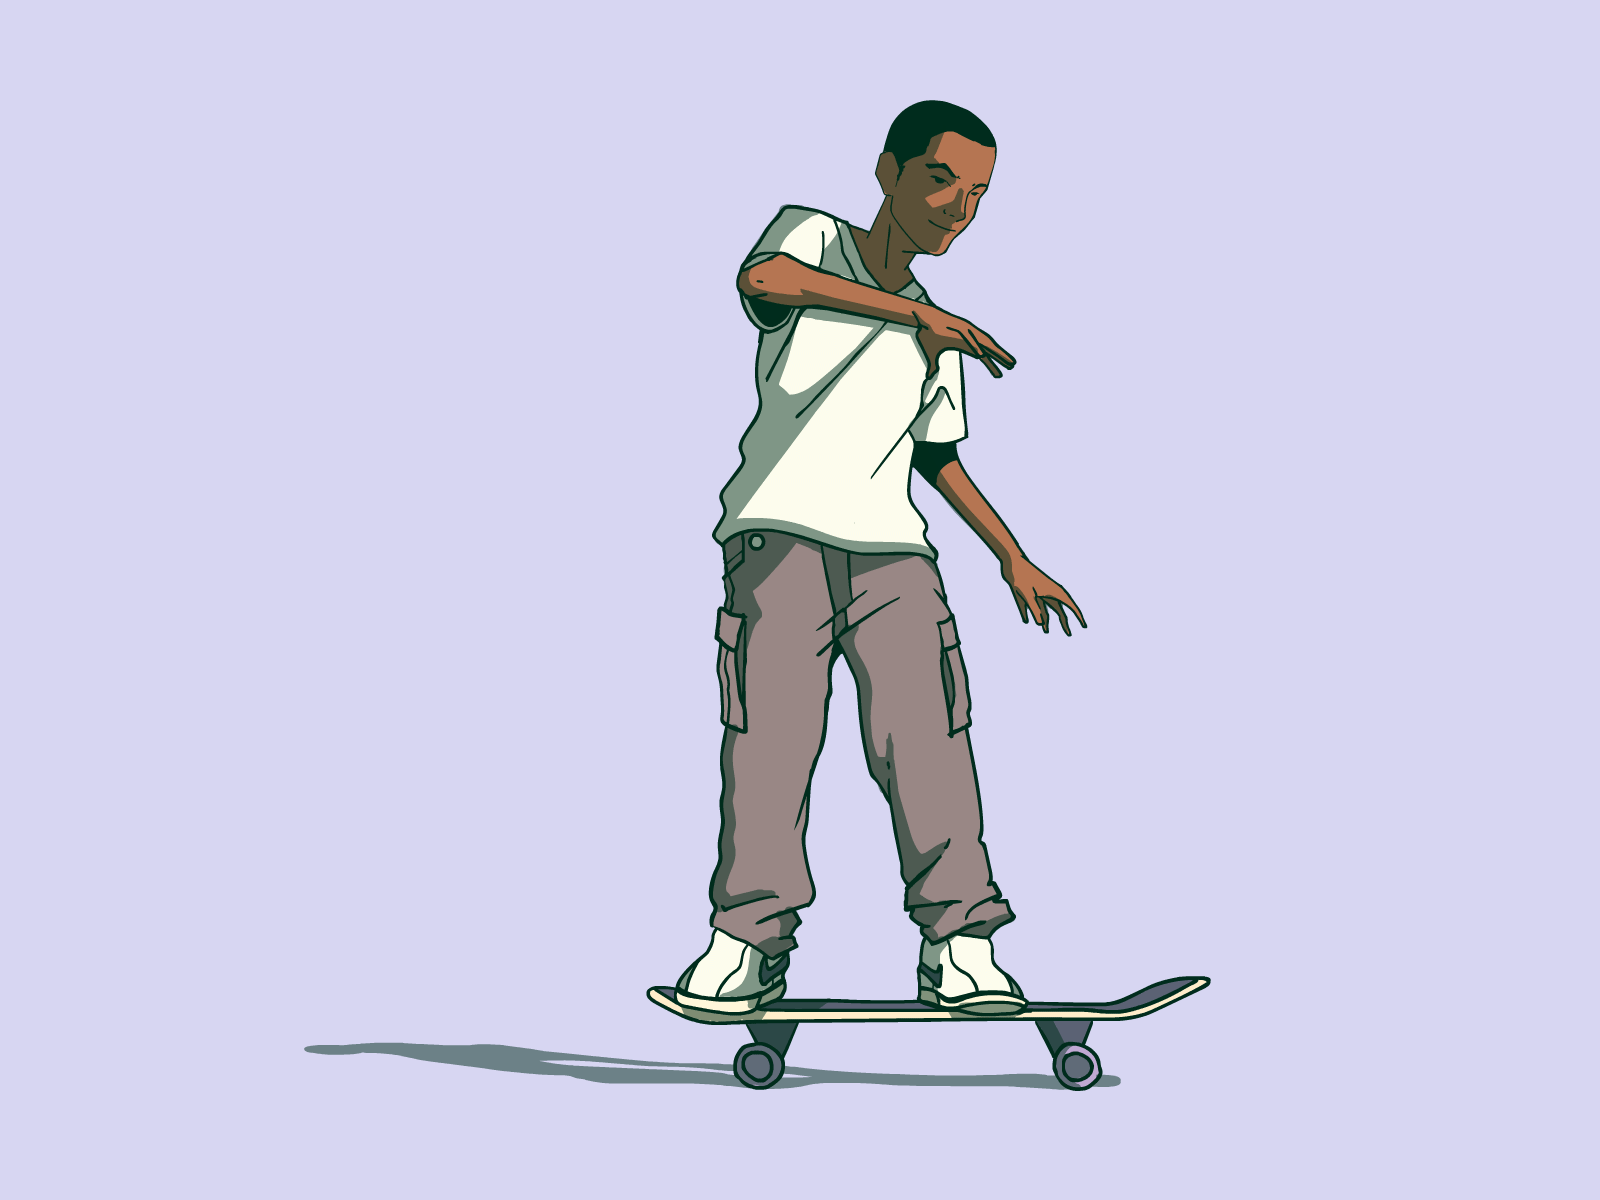 Skateboard Animation by Daniel on Dribbble